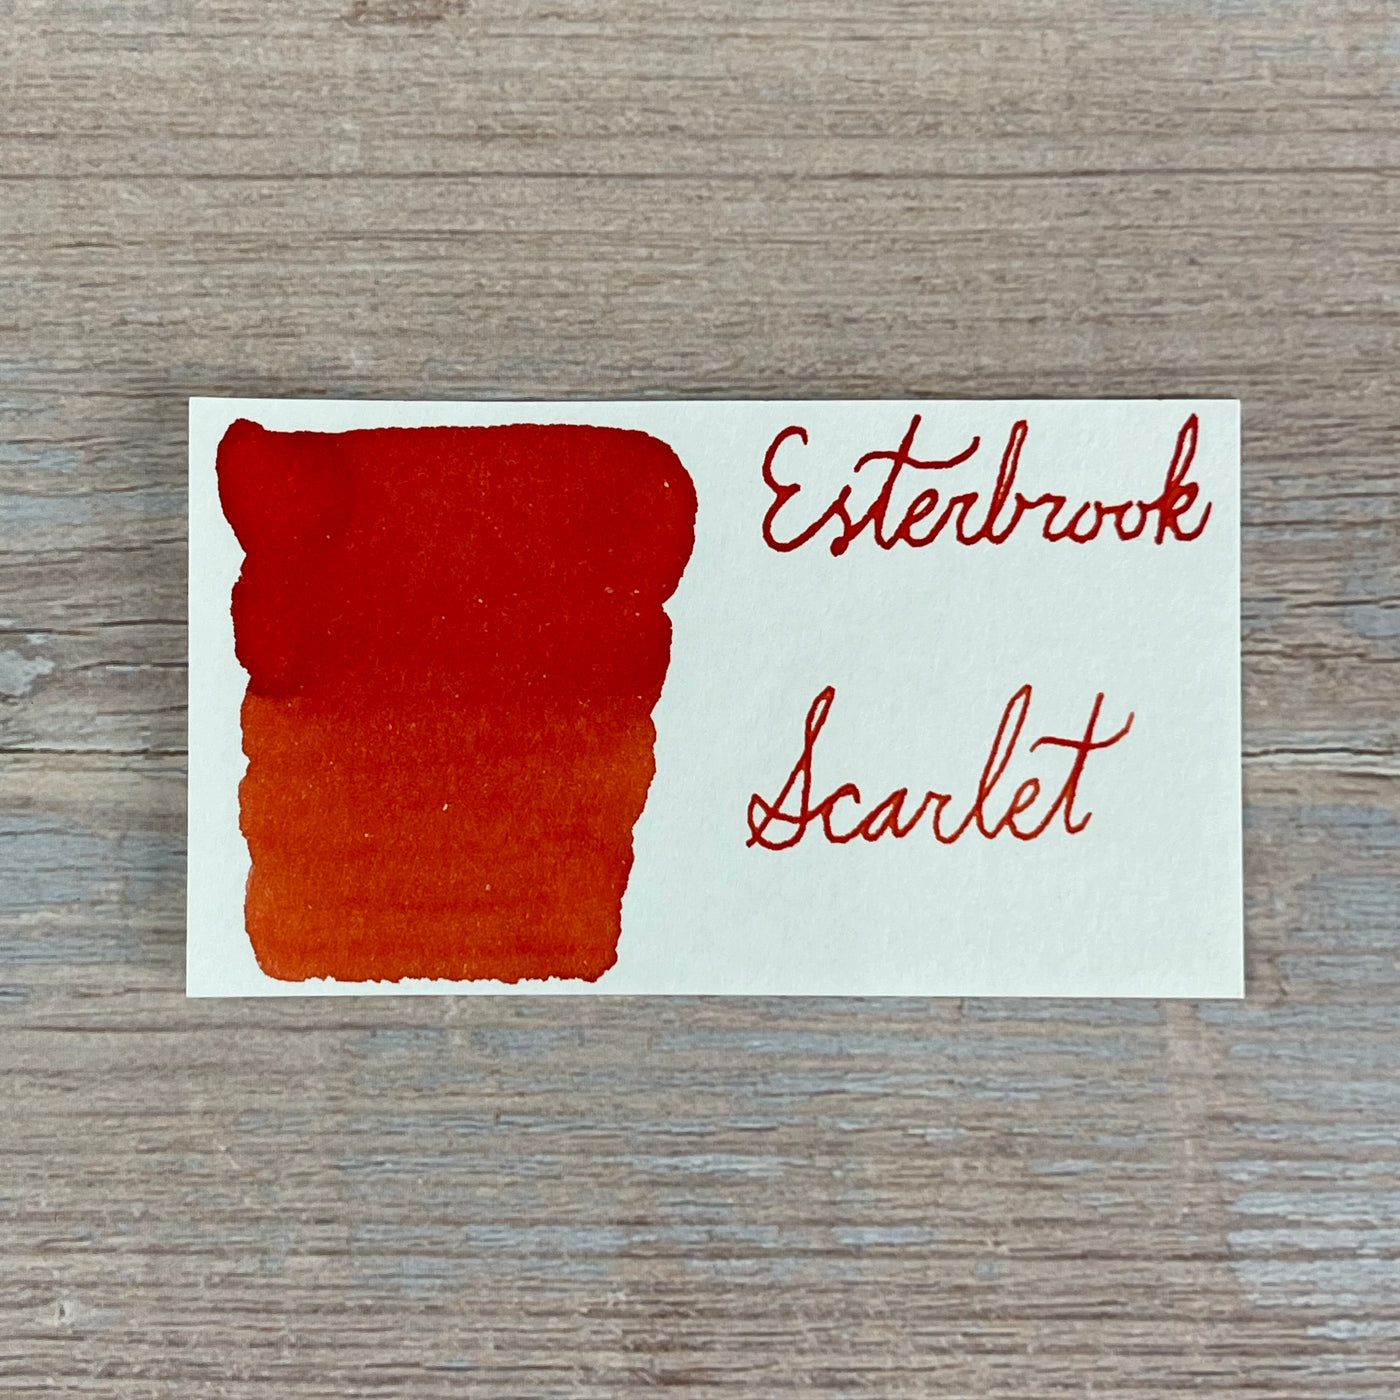 Esterbrook Scarlet - 50ml Bottled Ink